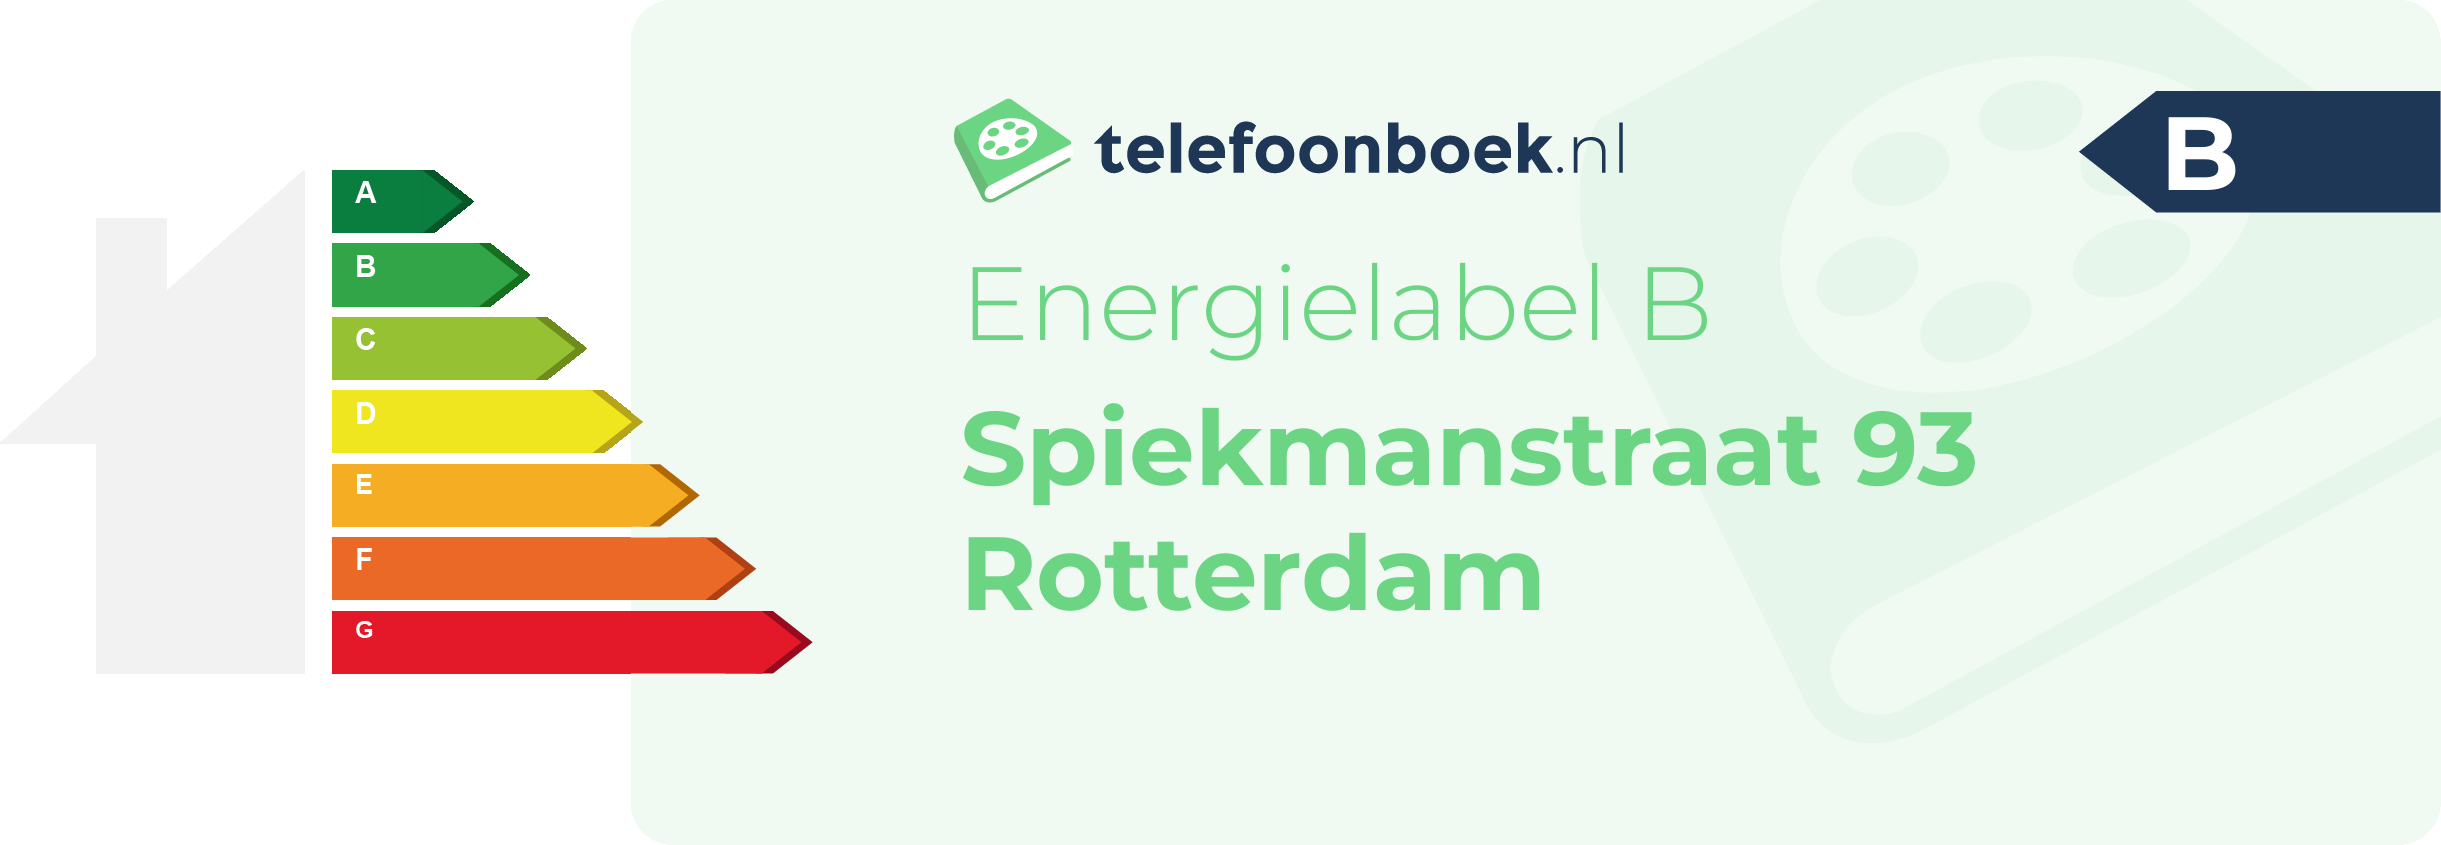 Energielabel Spiekmanstraat 93 Rotterdam